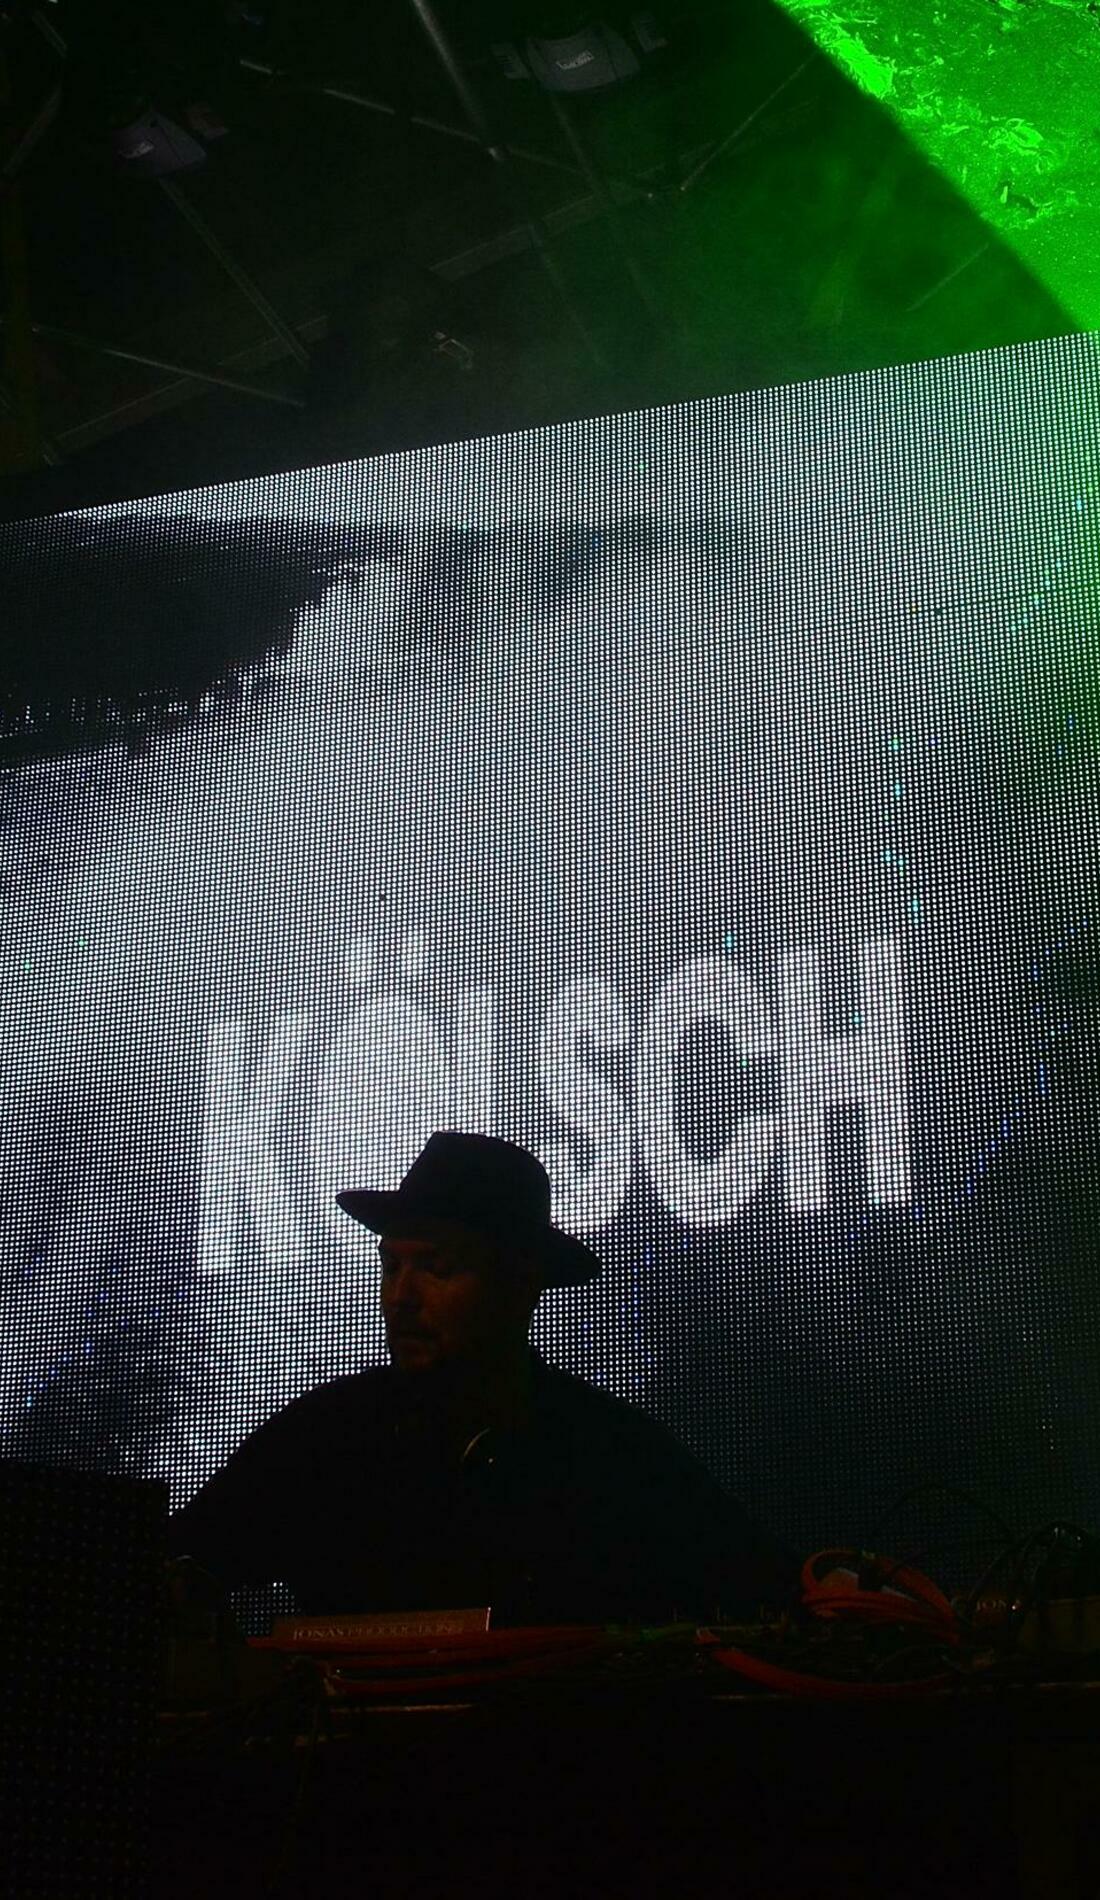 A Kolsch live event